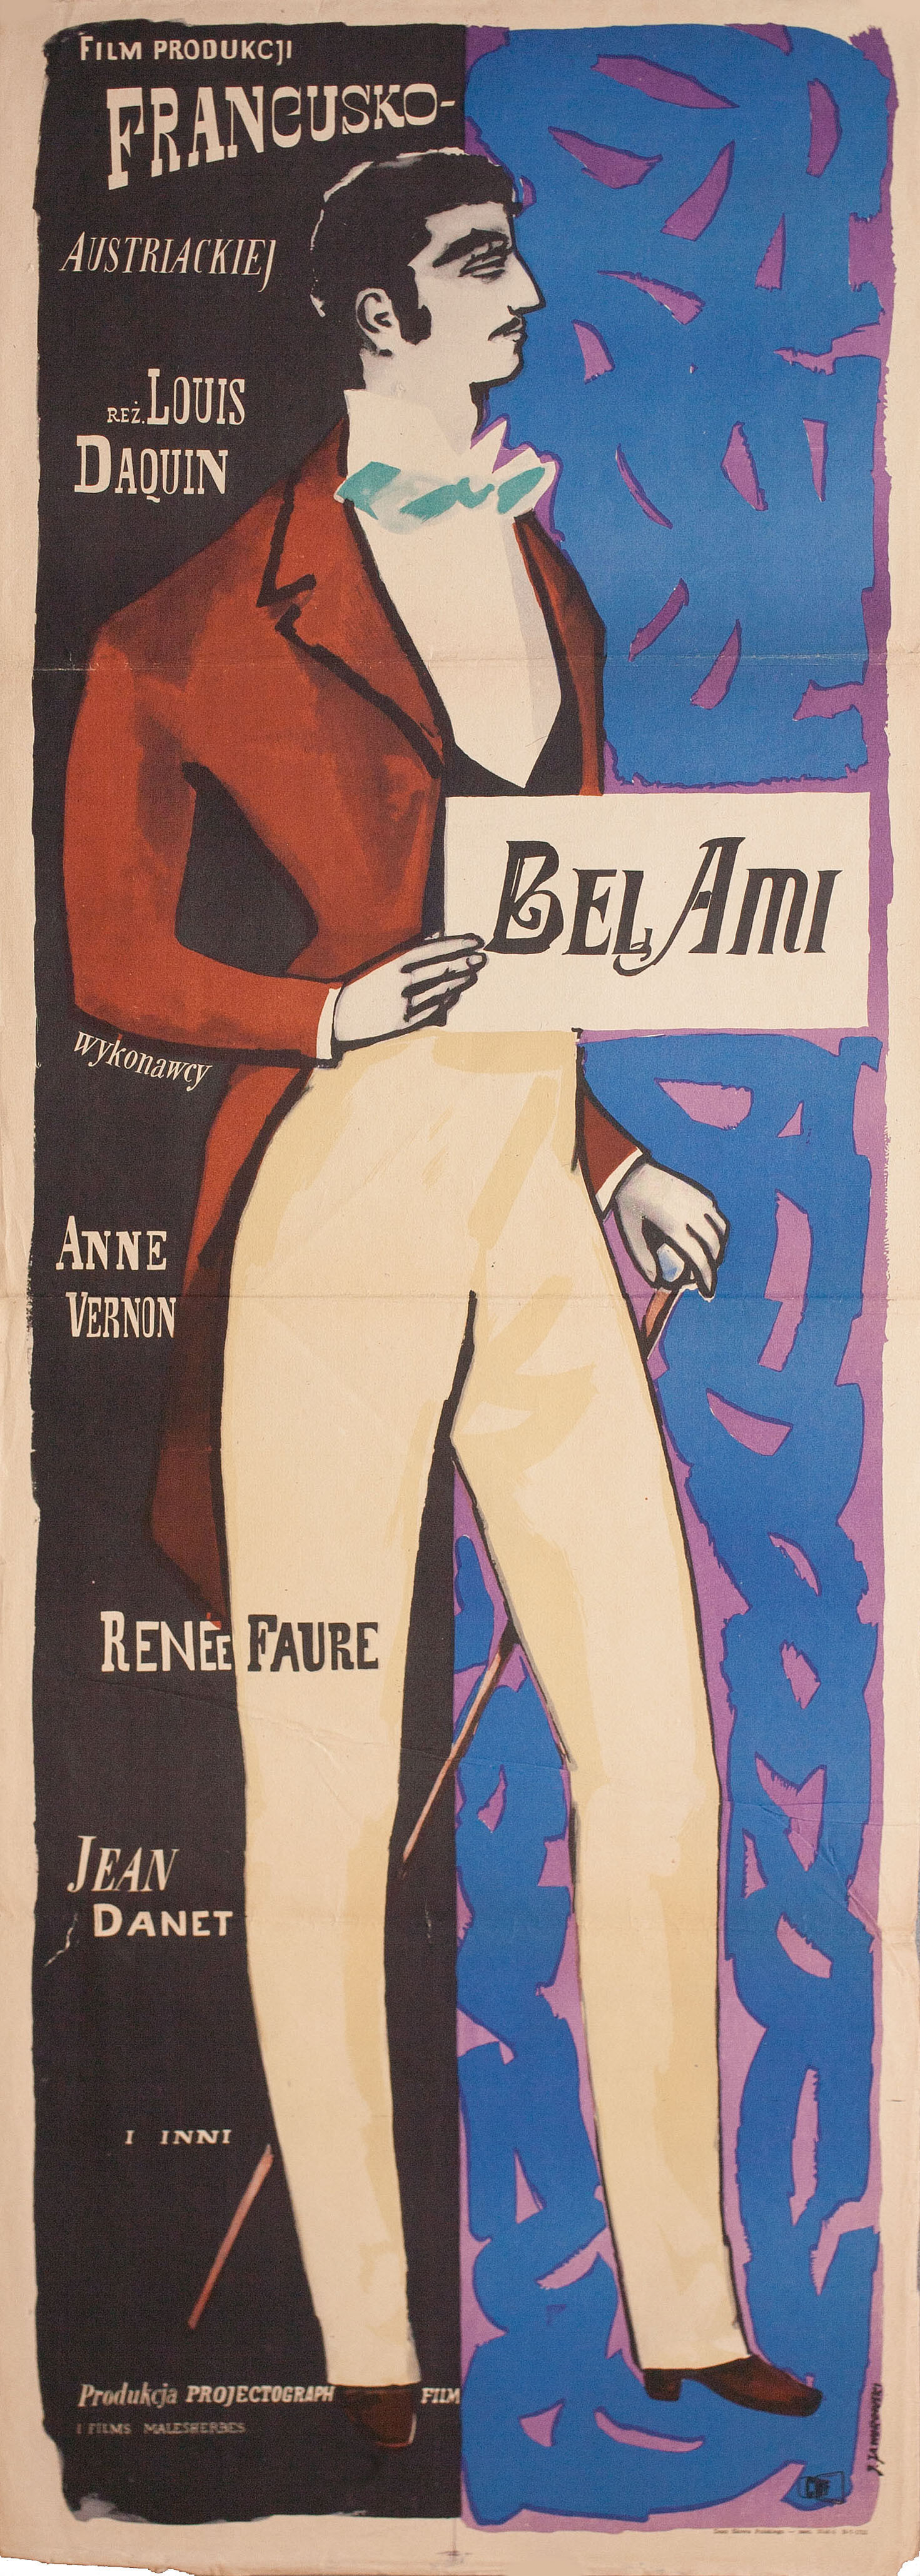 Милый друг (Bel Ami, 1955), режиссёр Луи Дакен, художественный постер к фильму (Польша, 1956 год), автор Ежи Яворовский